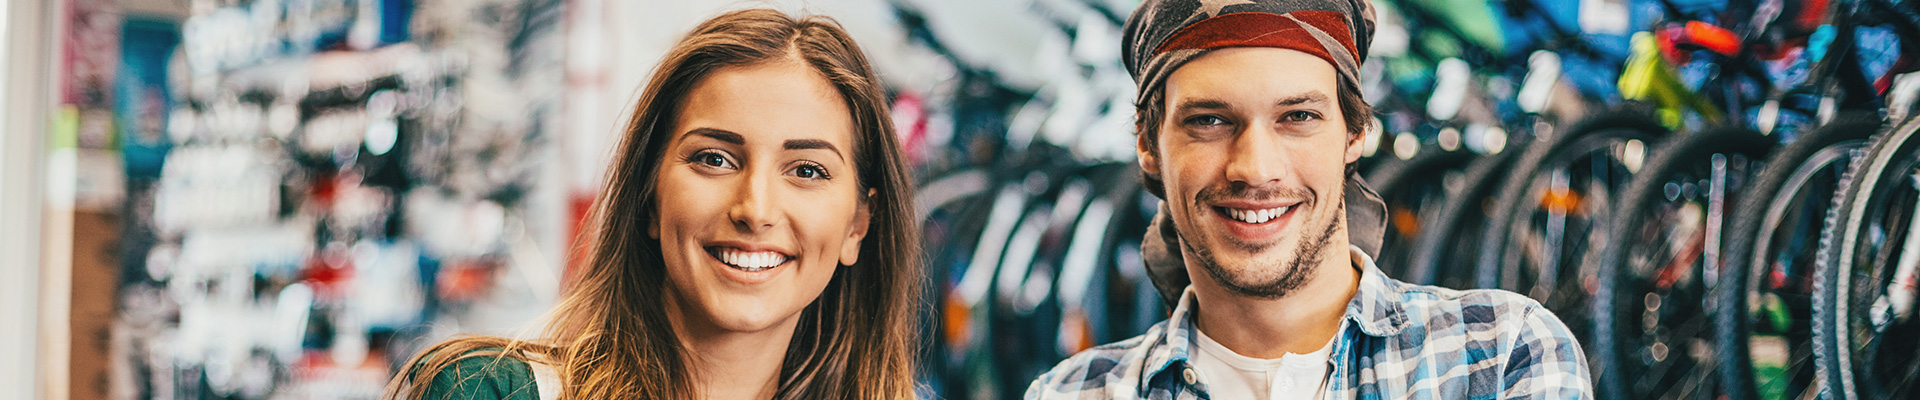 Junge Frau und junger Mann in Fahrradgeschäft, lächeln in Kamera